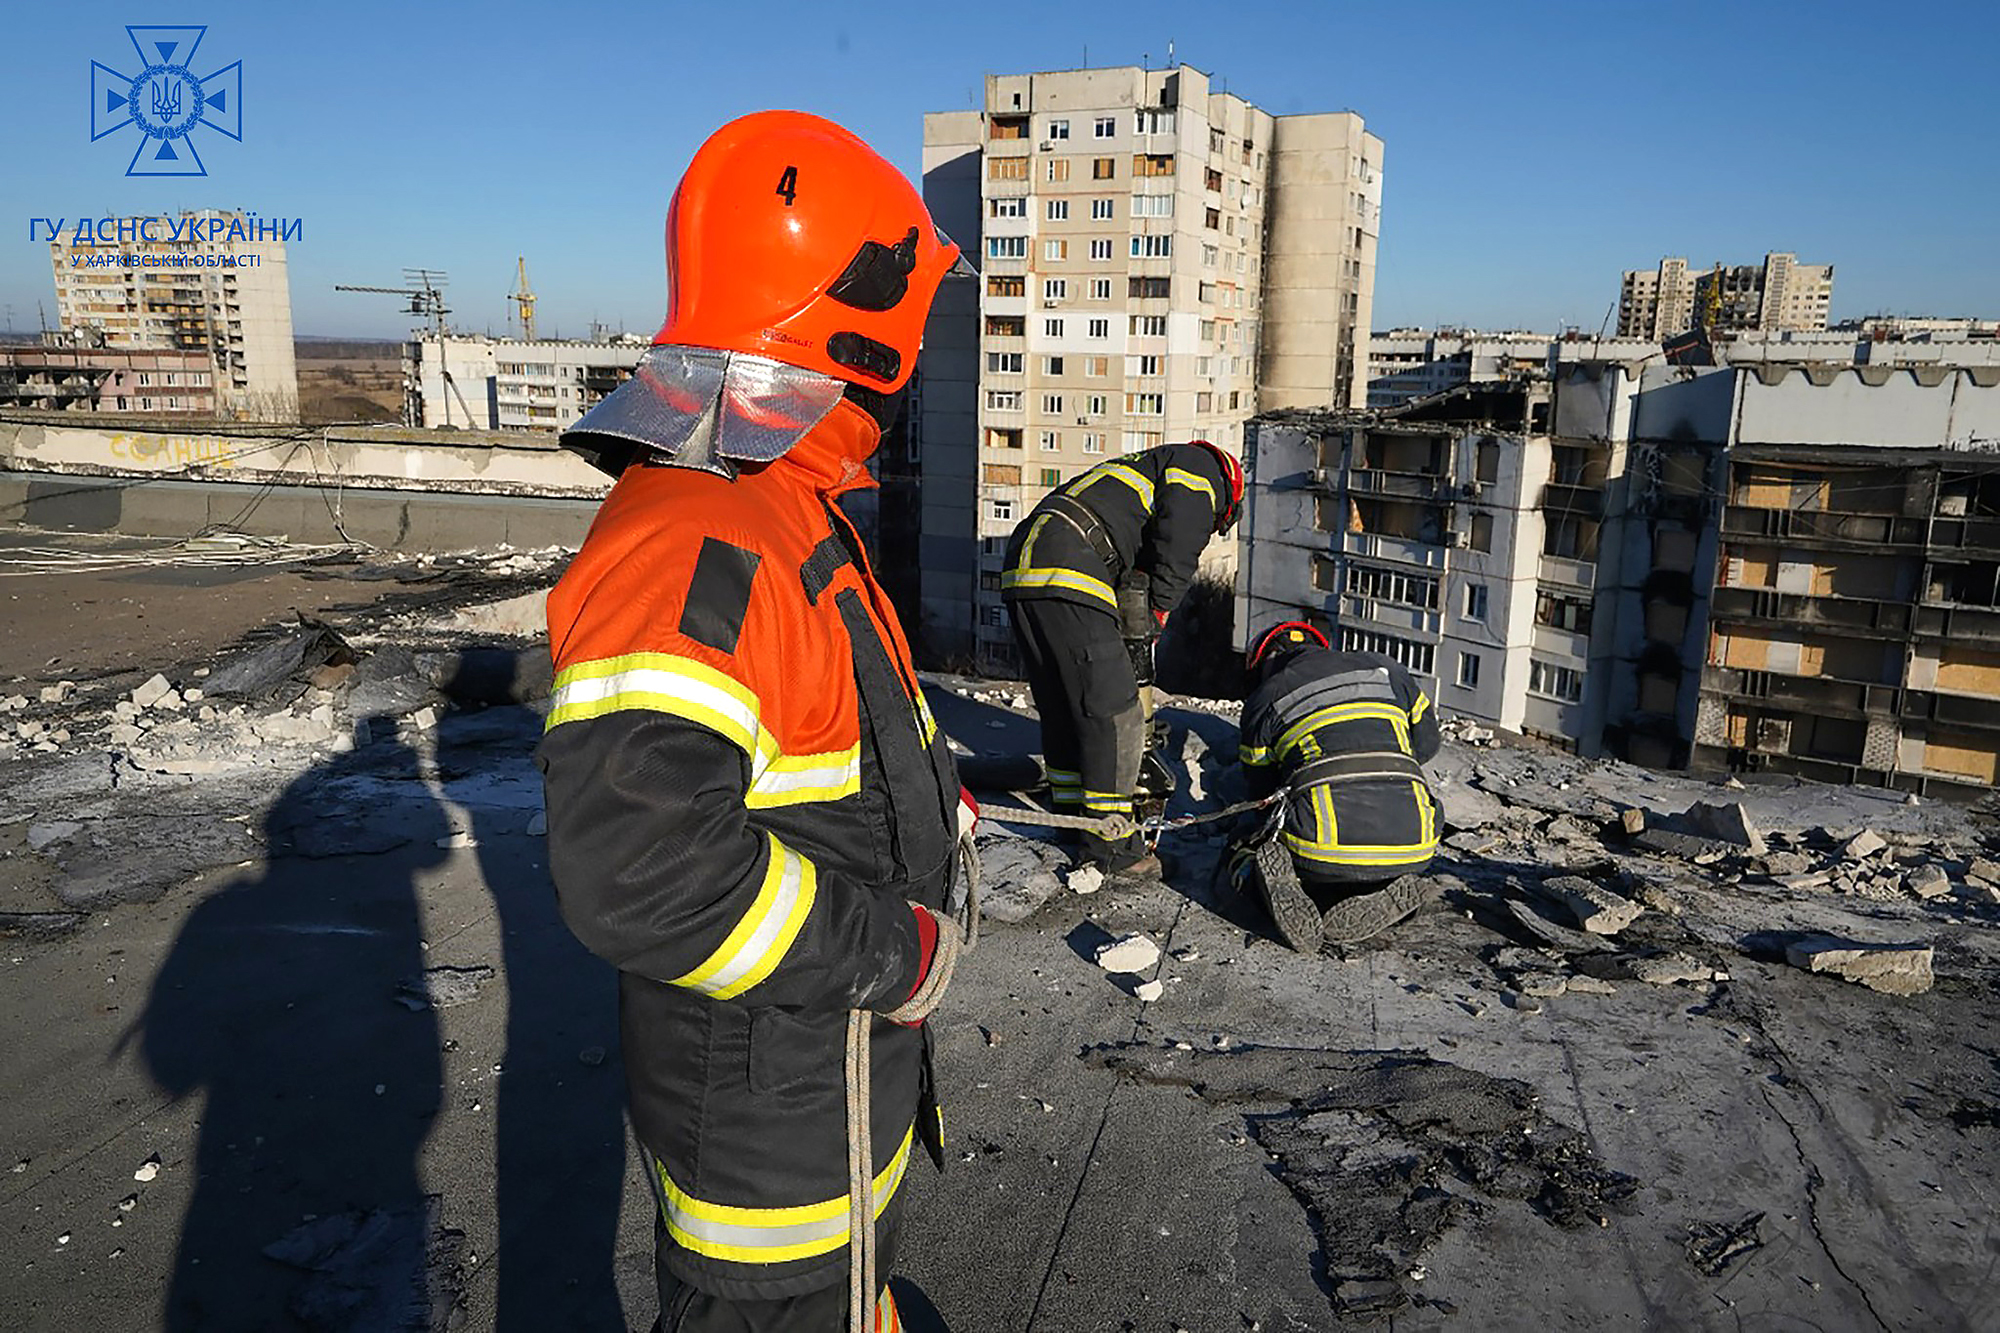 Dismantling damaged buildings, Kharkiv